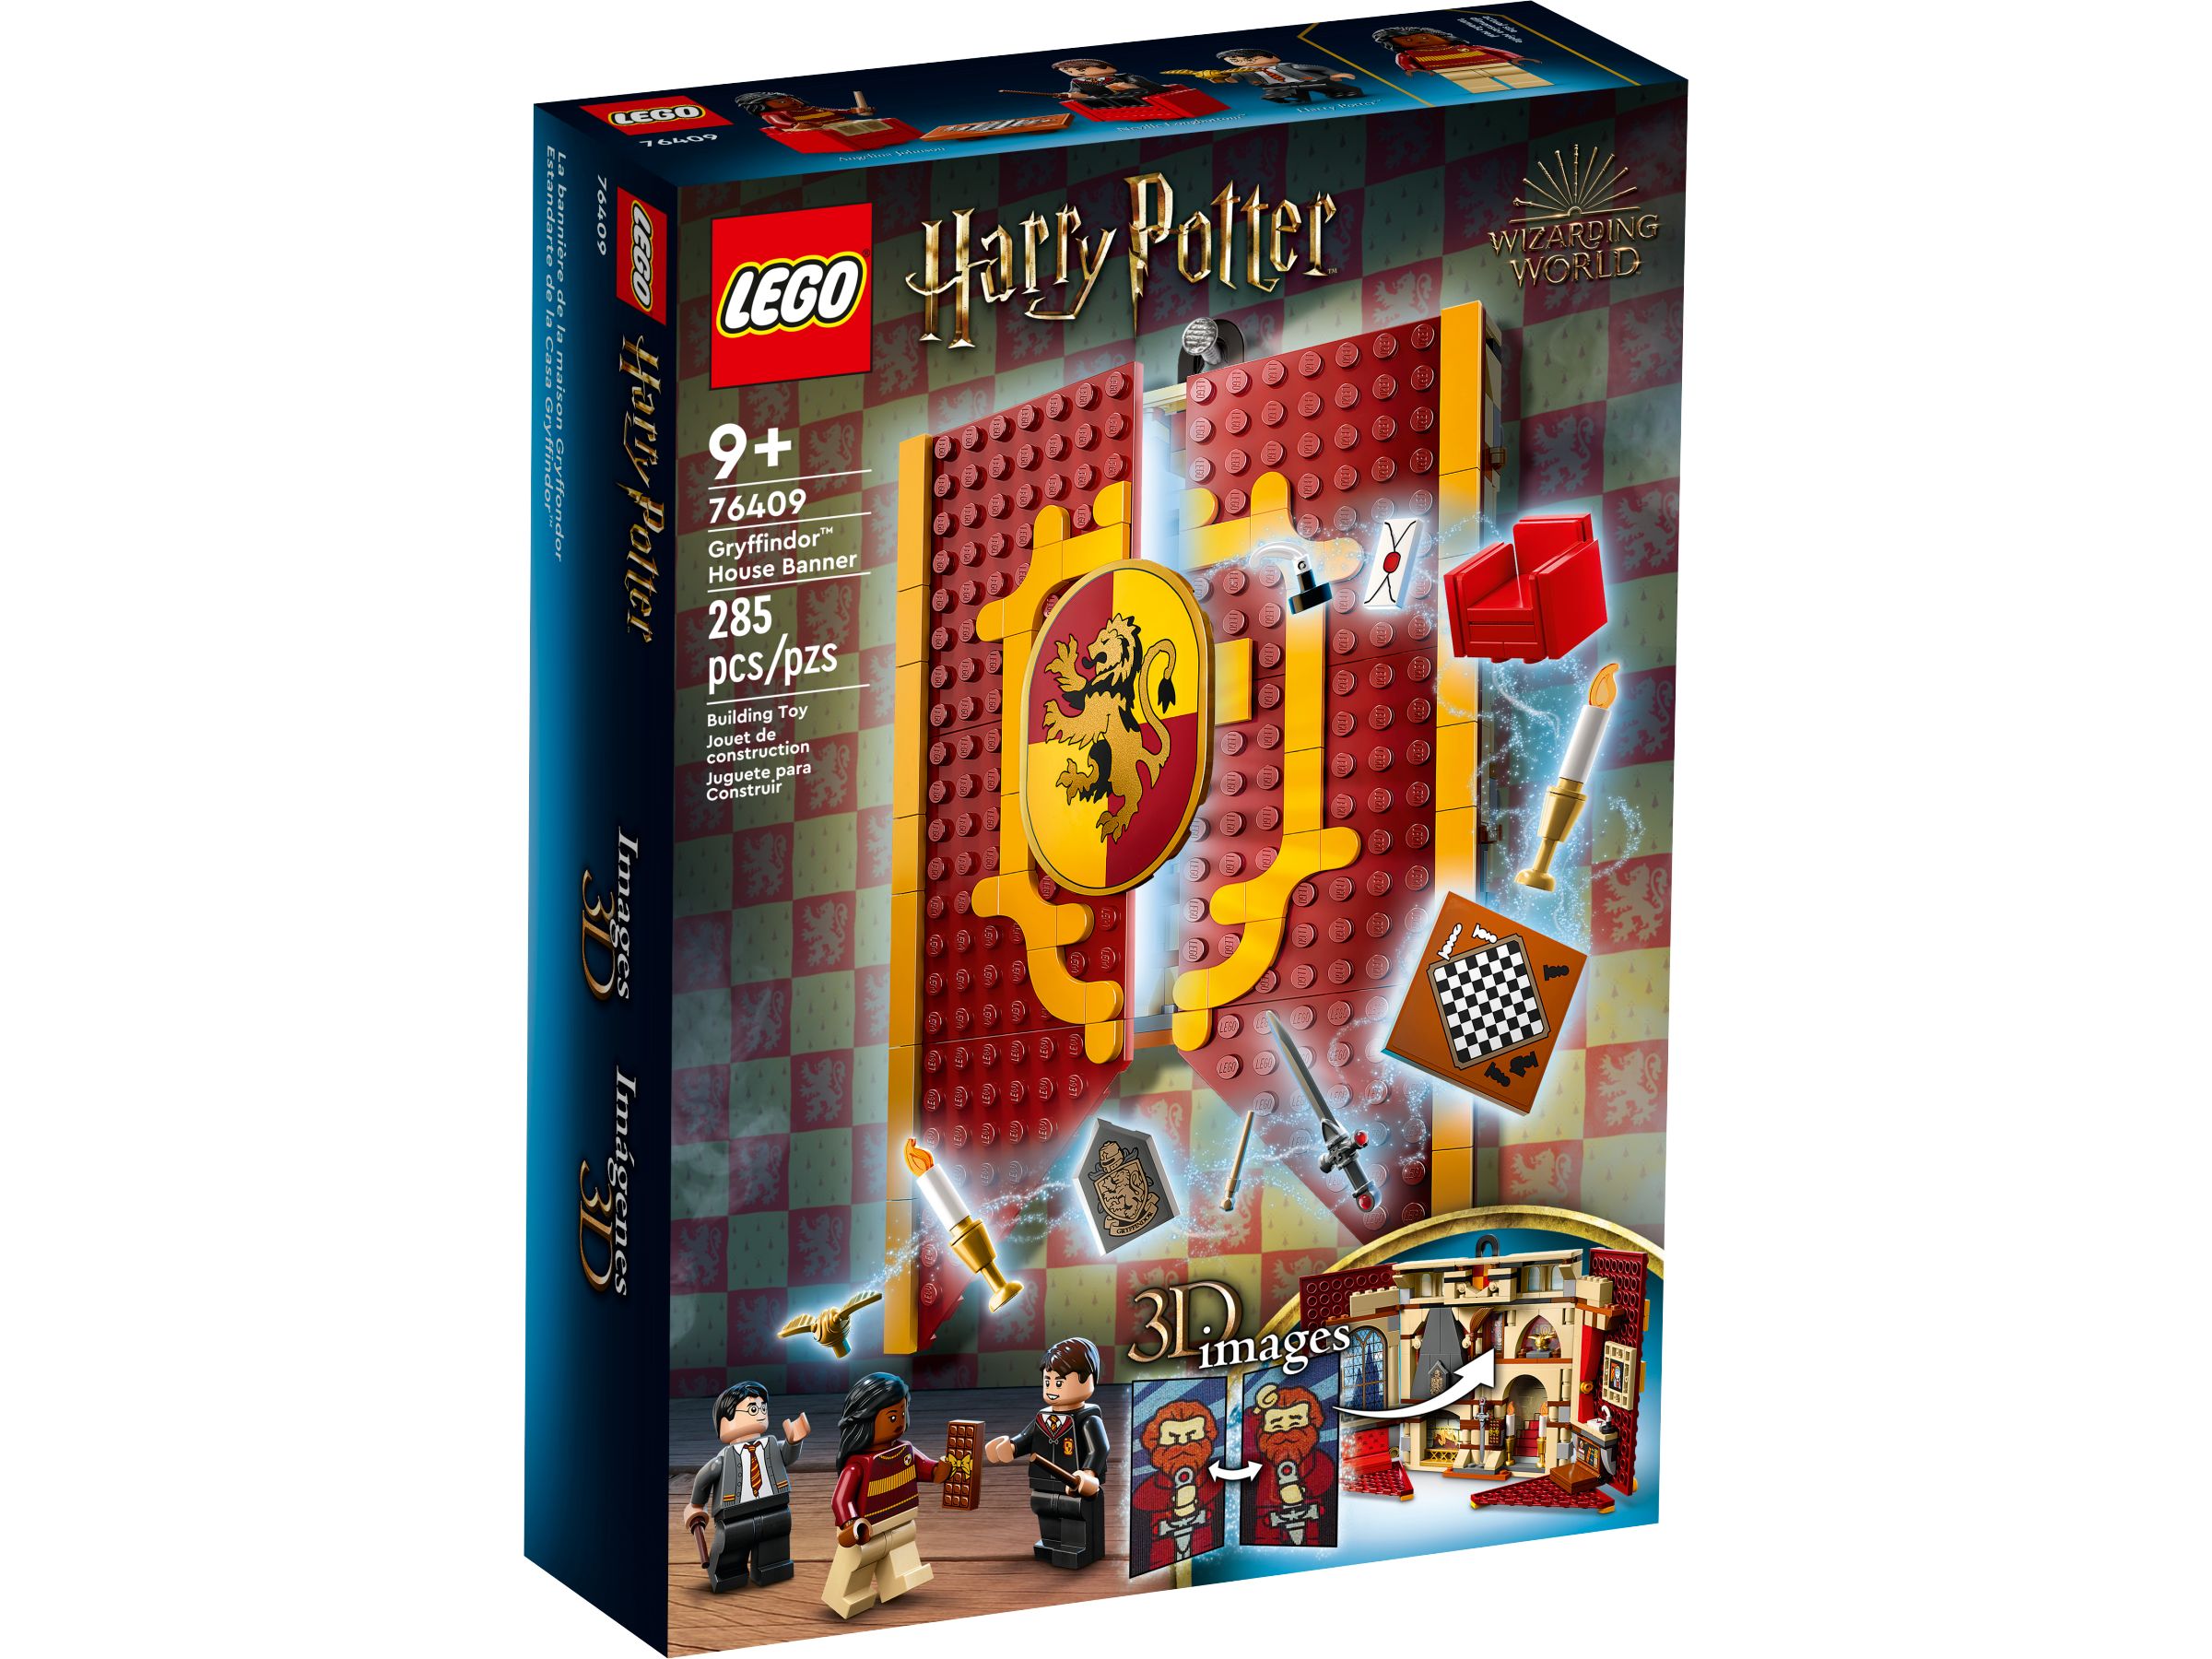 LEGO Harry Potter 76409 Hausbanner Gryffindor™ LEGO_76409_alt1.jpg